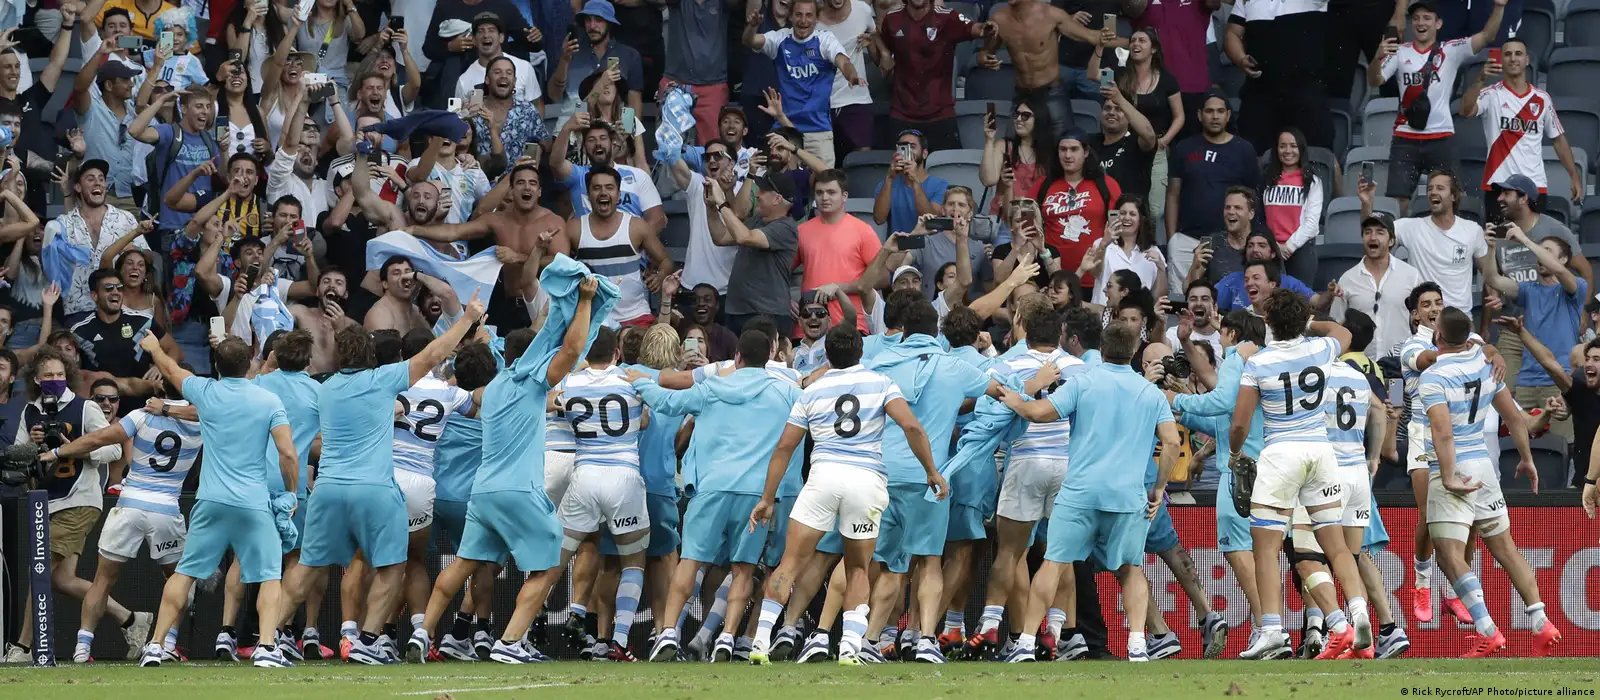 Nueva Zelandia derrota a Argentina y avanza cómodamente a la final